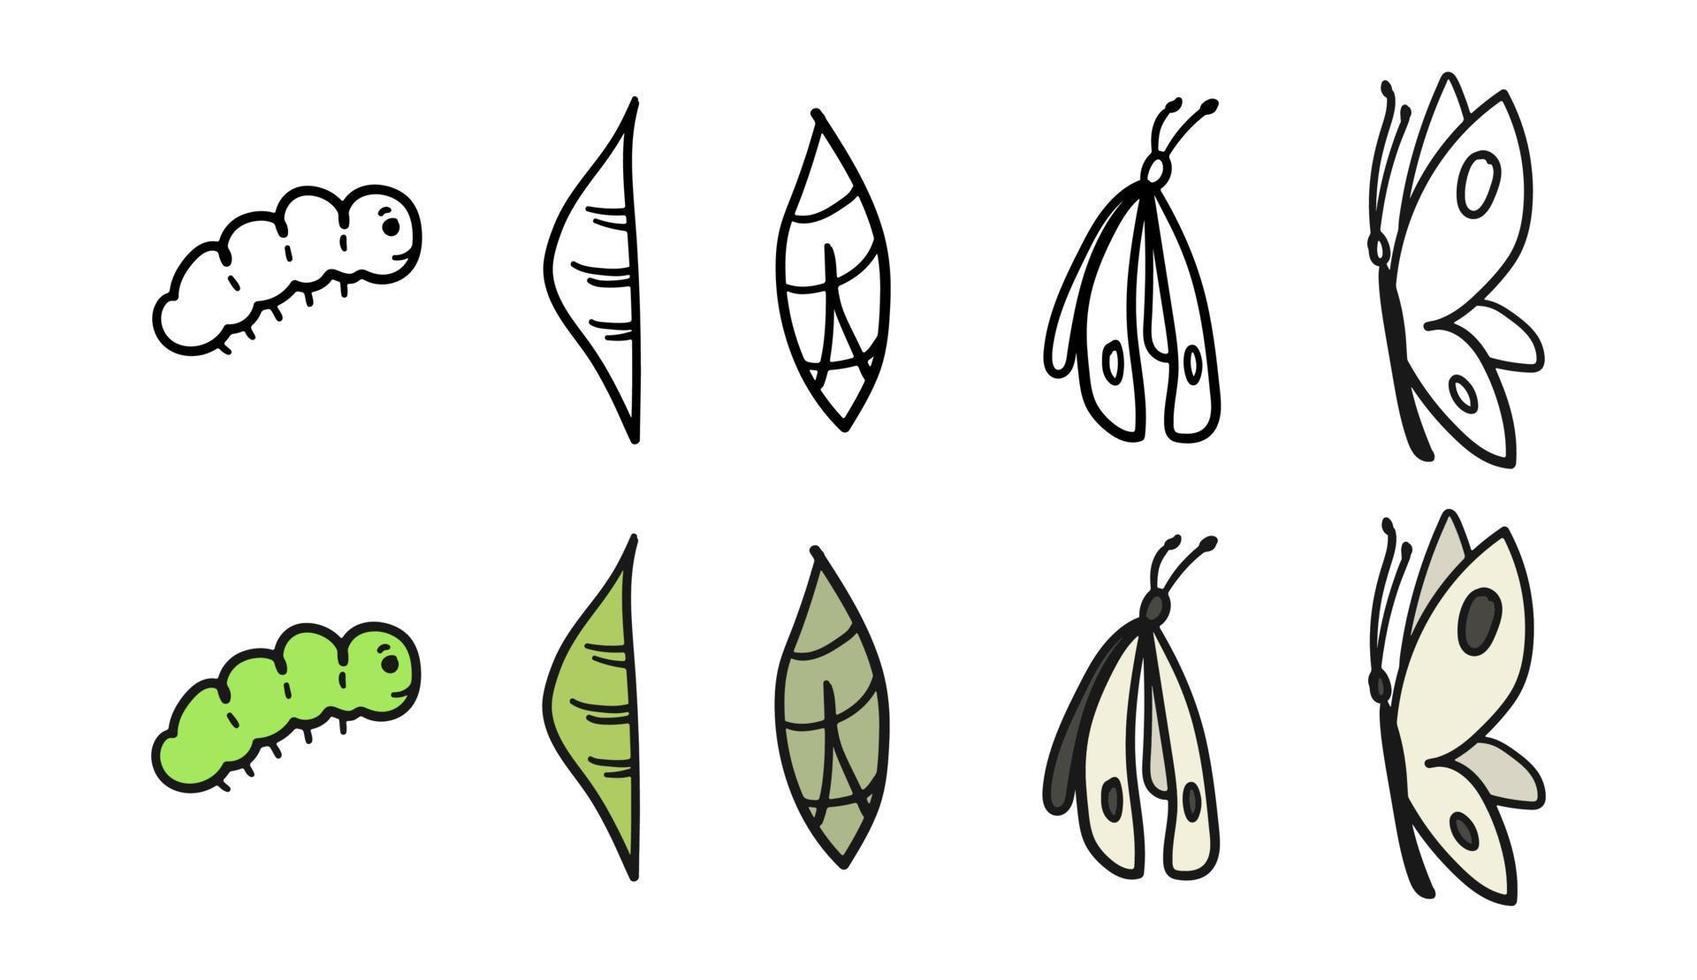 metamorfosis de pieris brassicae. proceso de desarrollo de oruga a mariposa transformación de capullo, ciclo de vida, mariposa de repollo de crecimiento, ilustración de vector de croquis dibujado a mano. metamorfosis de insectos.